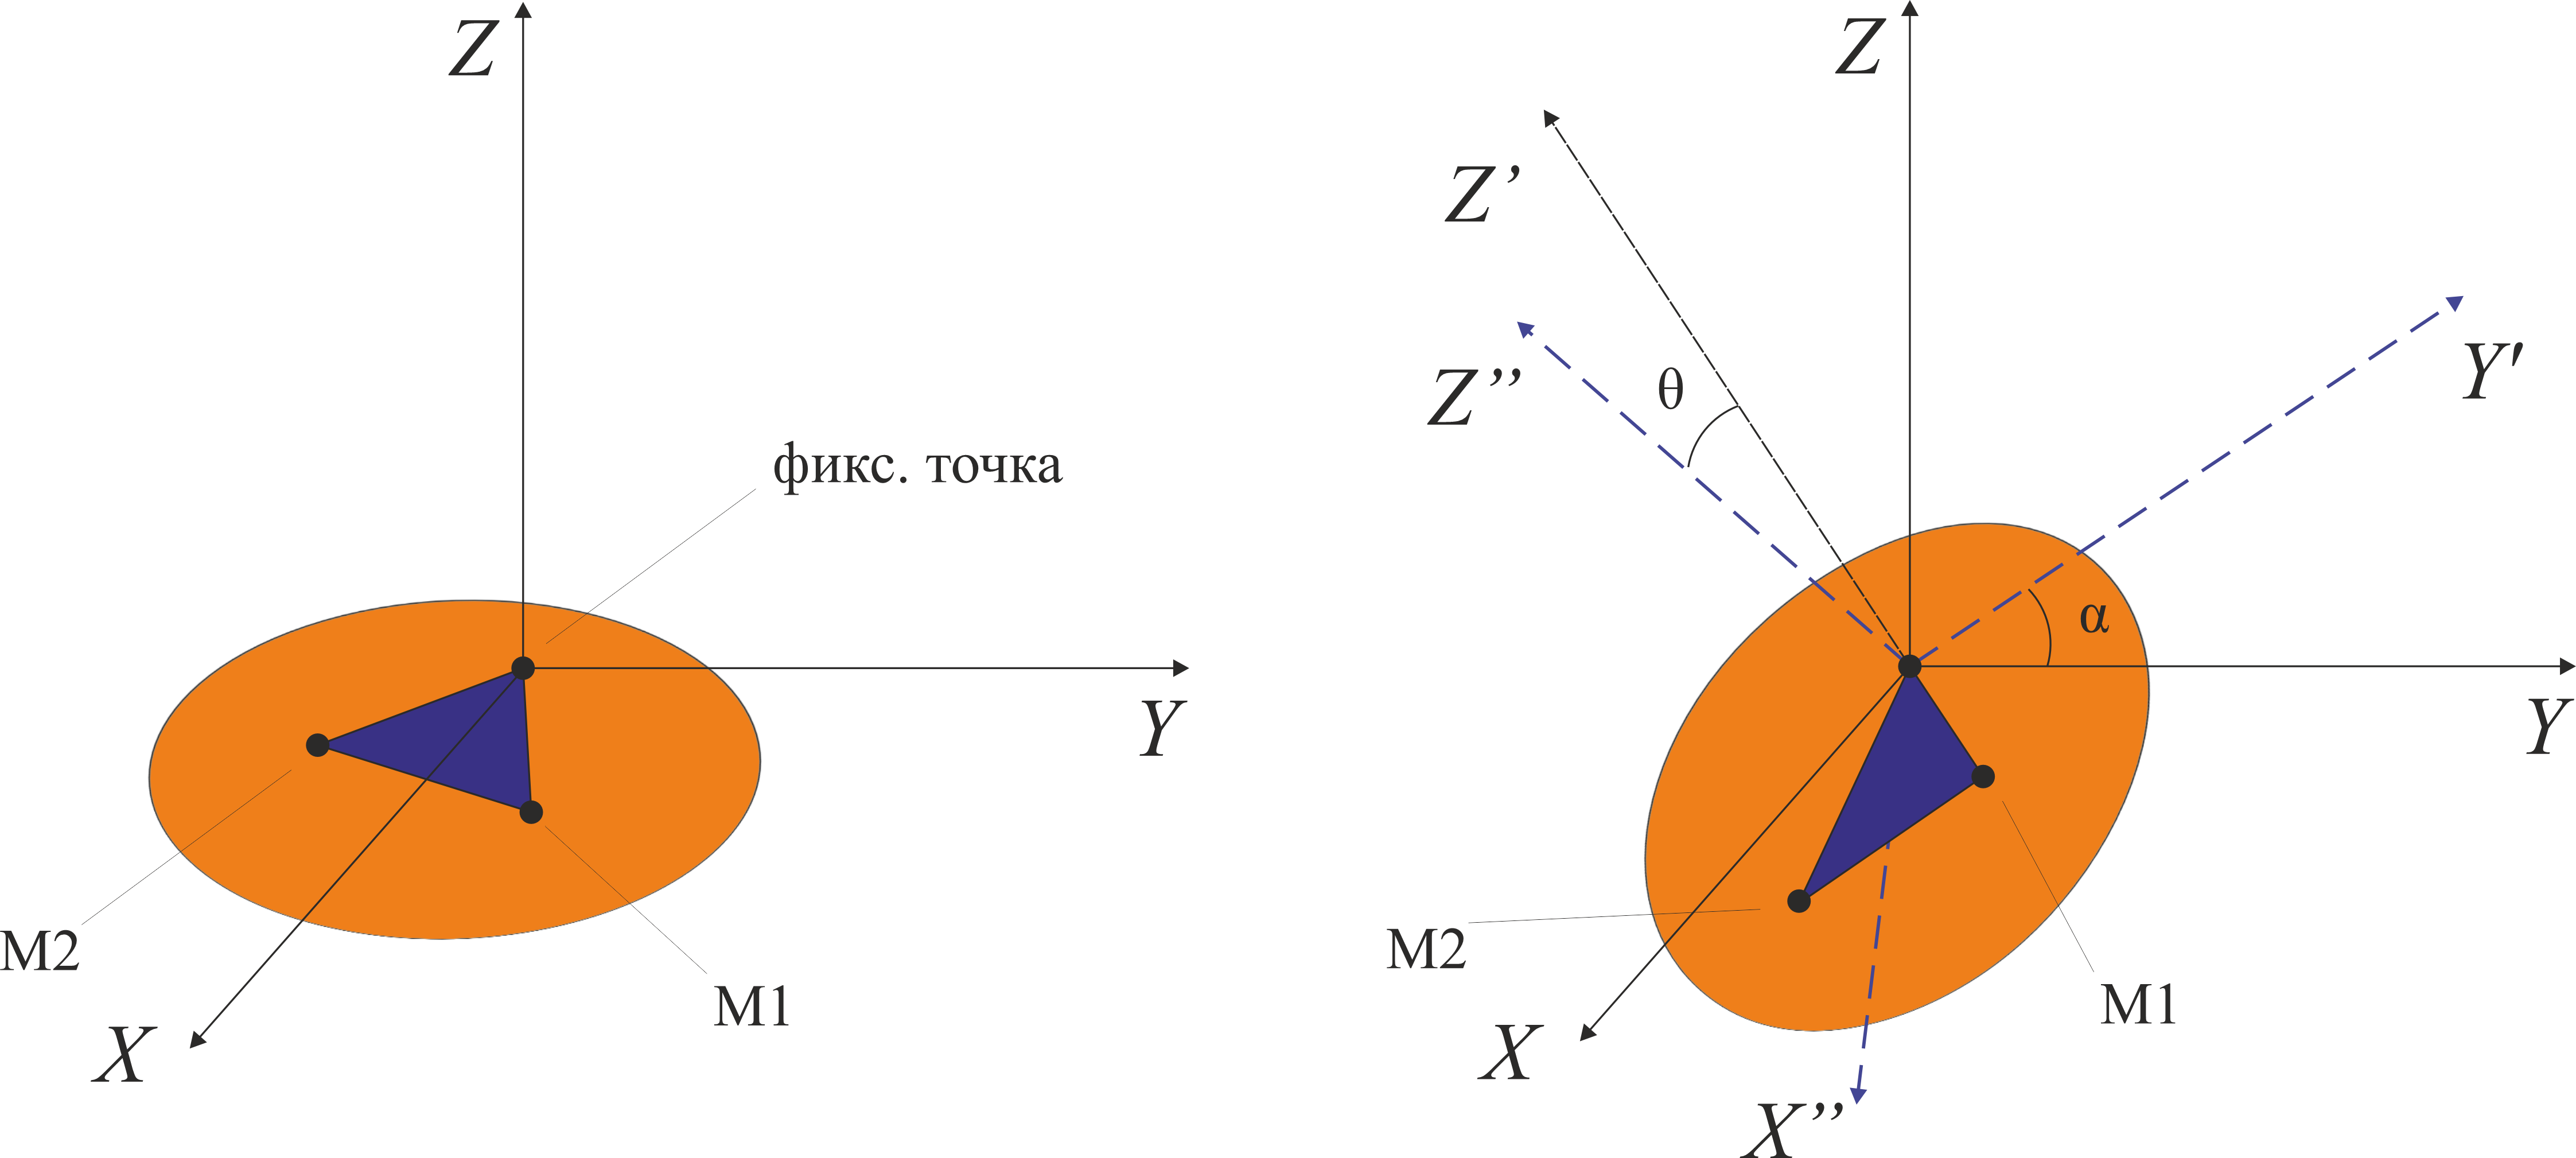 Рис. 1. Схема установки до и после поворота. Оранжевым цветом изображена платформа. Углы Эйлера: крен – α, тангаж – θ.